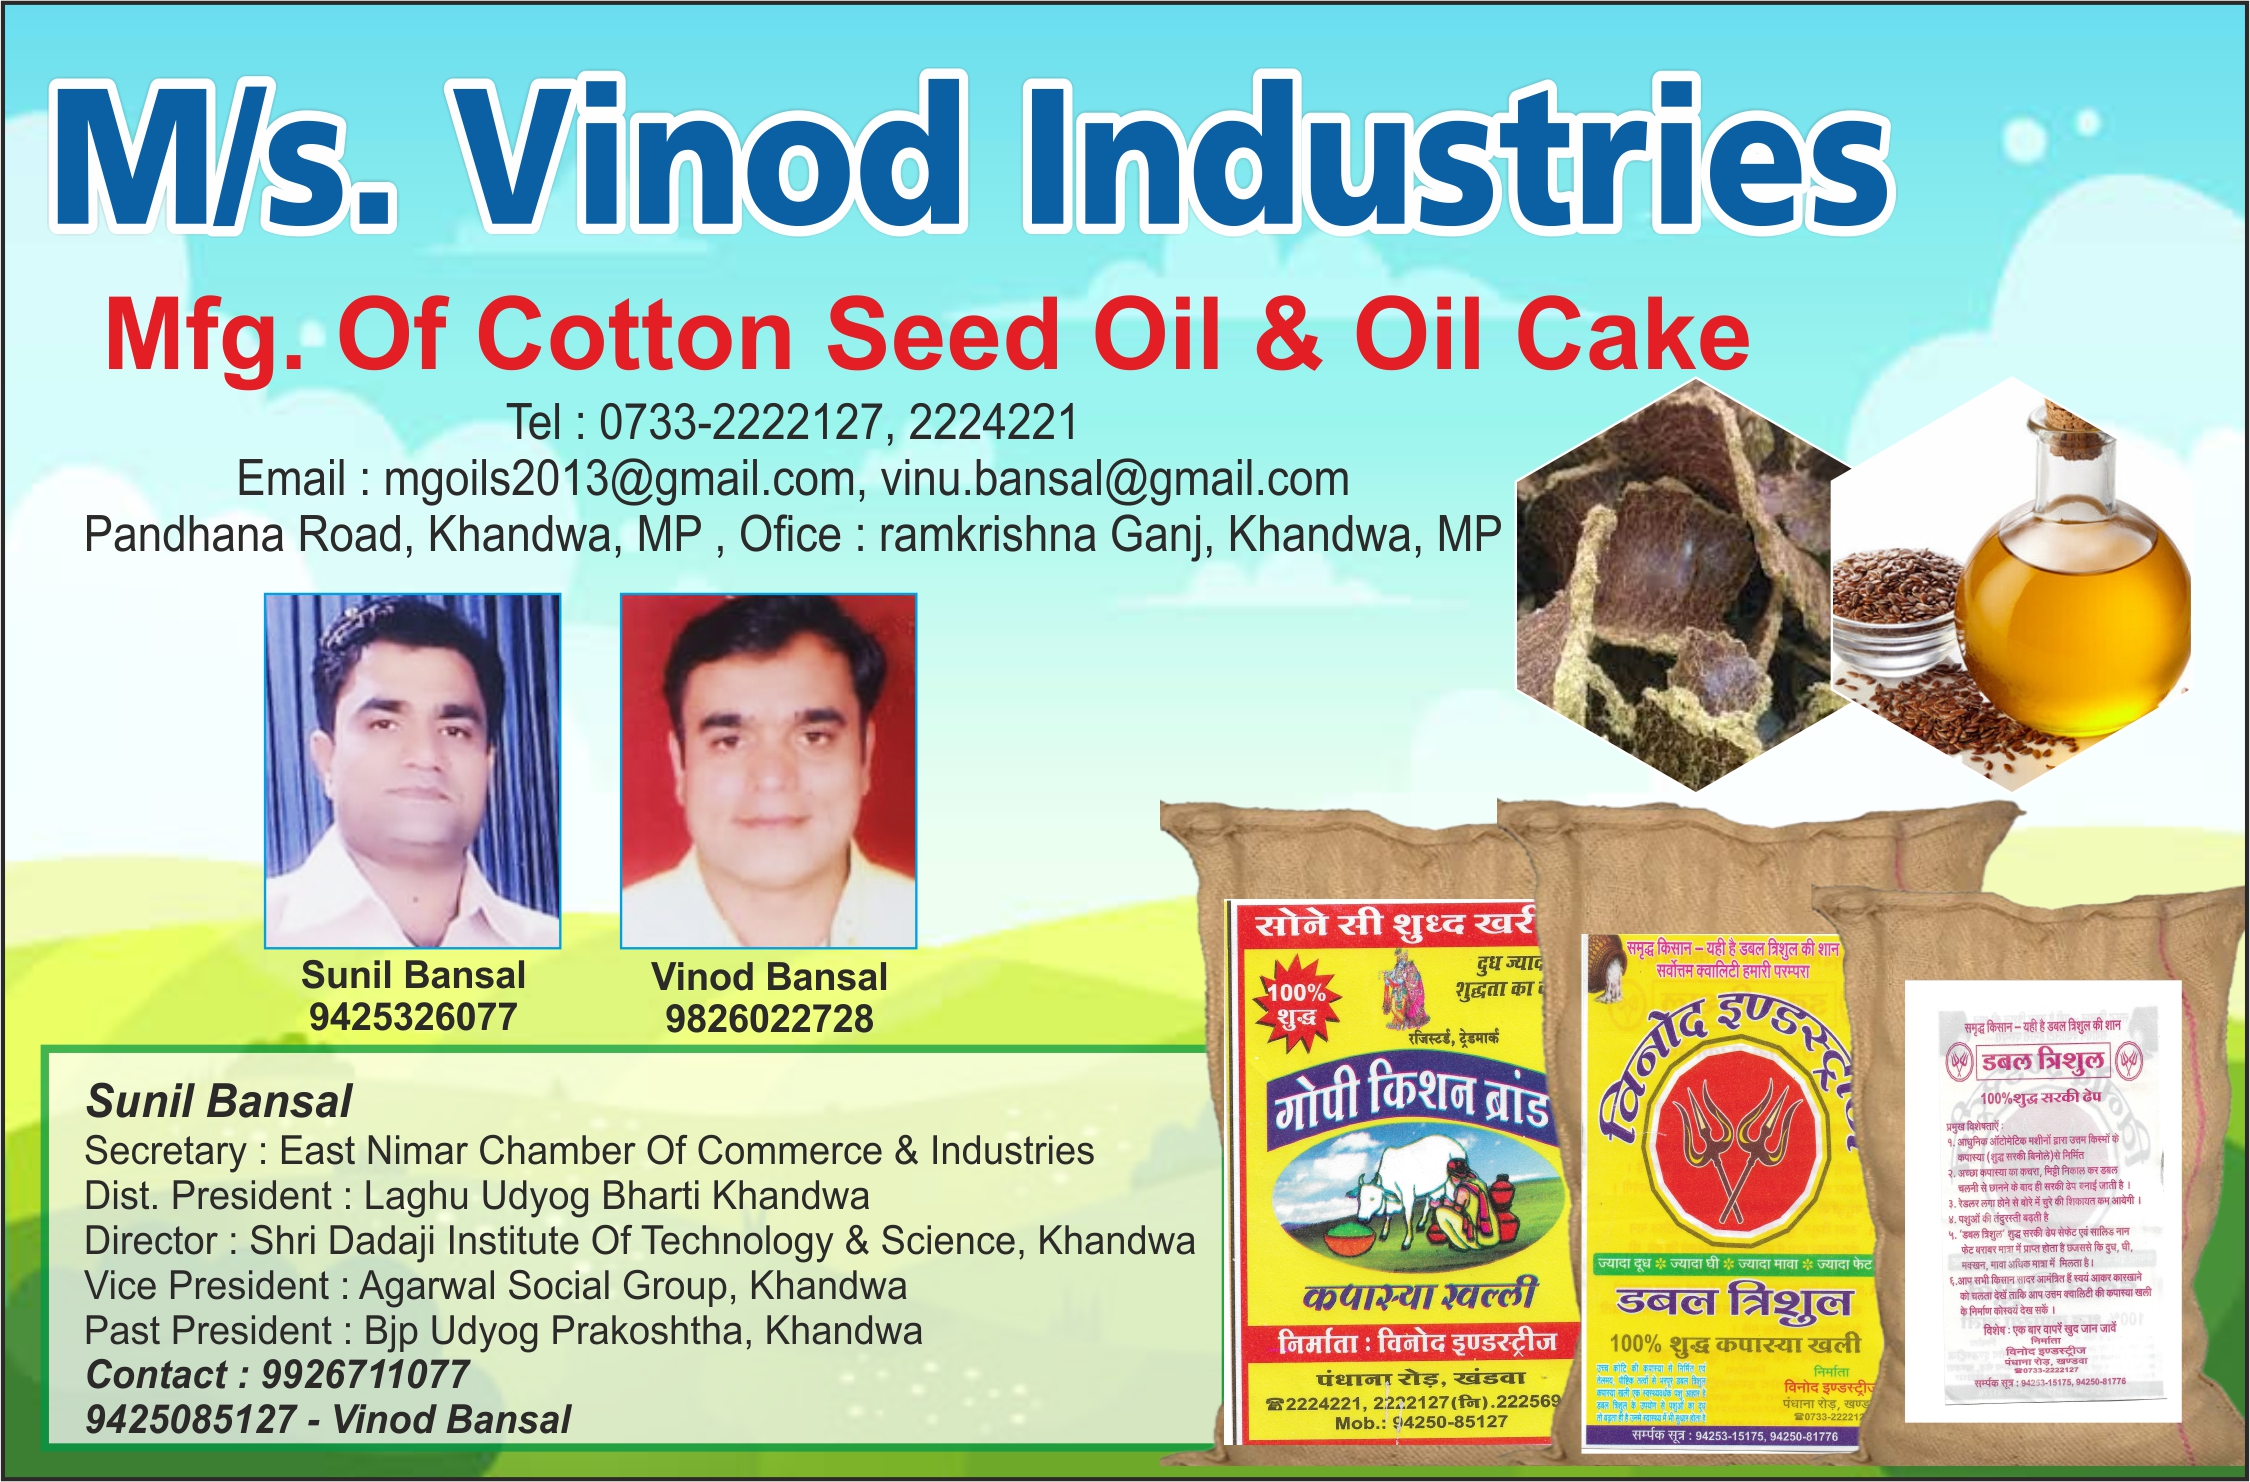 M/s. Vinod Industries